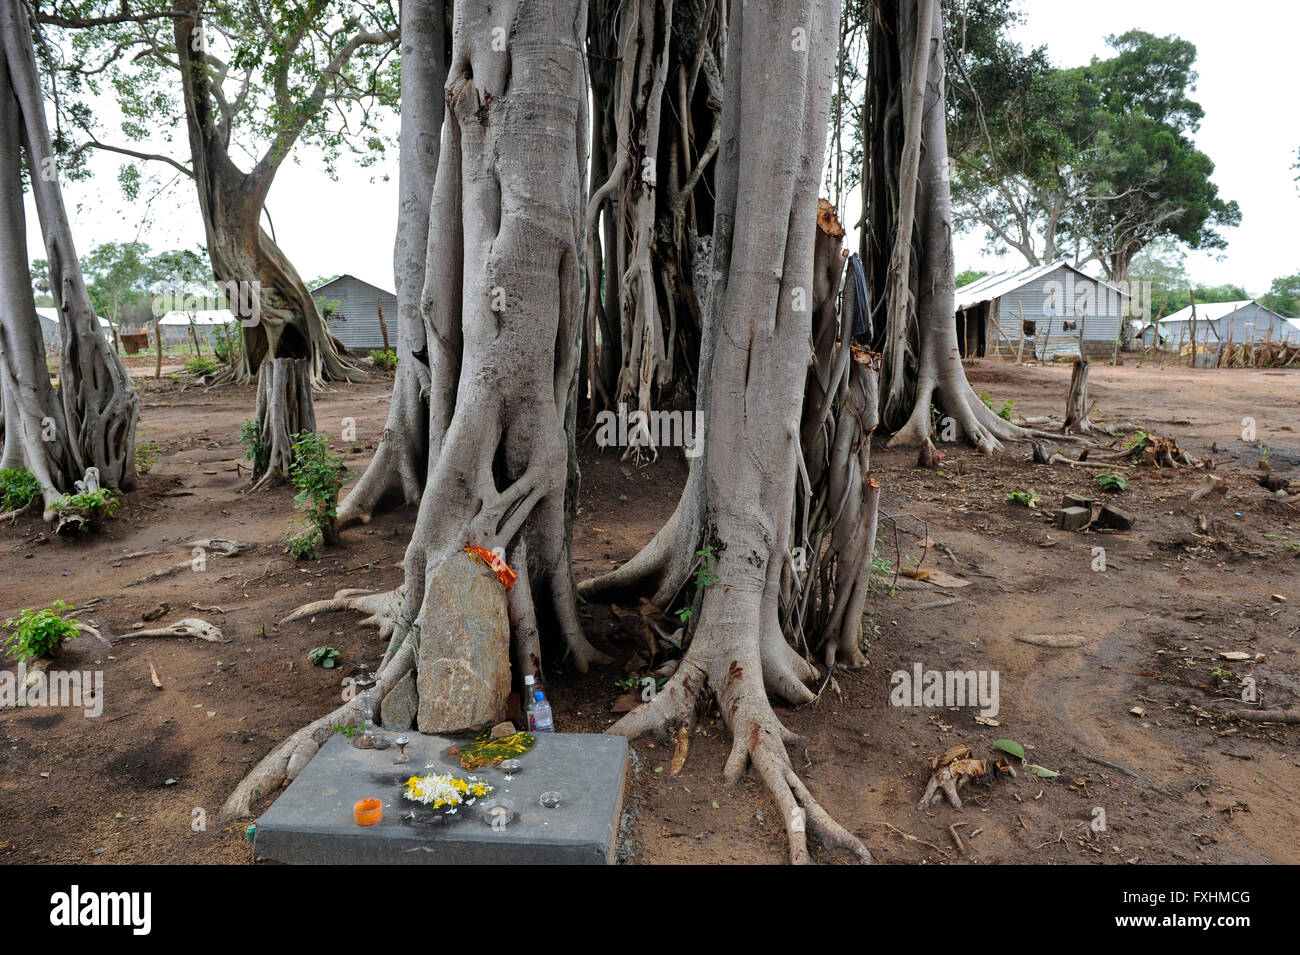 SRI LANKA, Trincomalee, réfugiés tamouls sont conservés par le gouvernement cingalais après la guerre contre les Tigres tamouls LTTE dans ce qu'on appelle du bien-être social des camps dans la jungle distants sécurisés , les camps sont sous le contrôle total de l'armée sri-lankaise, hindou de culte et Banyan Tree Banque D'Images